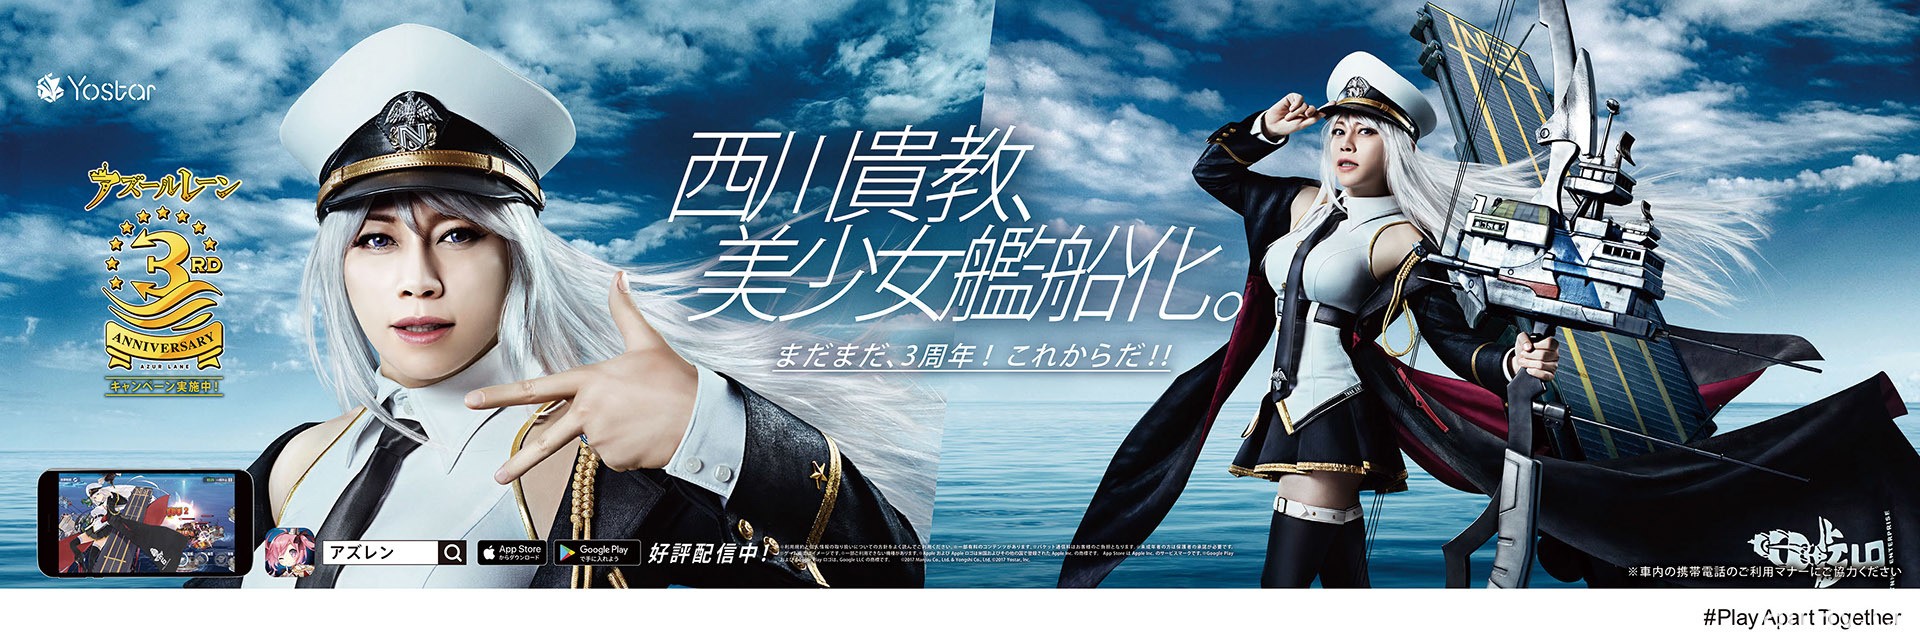 《碧藍航線》日版釋出三周年宣傳影片 西川貴教化身美少女船艦現身演出